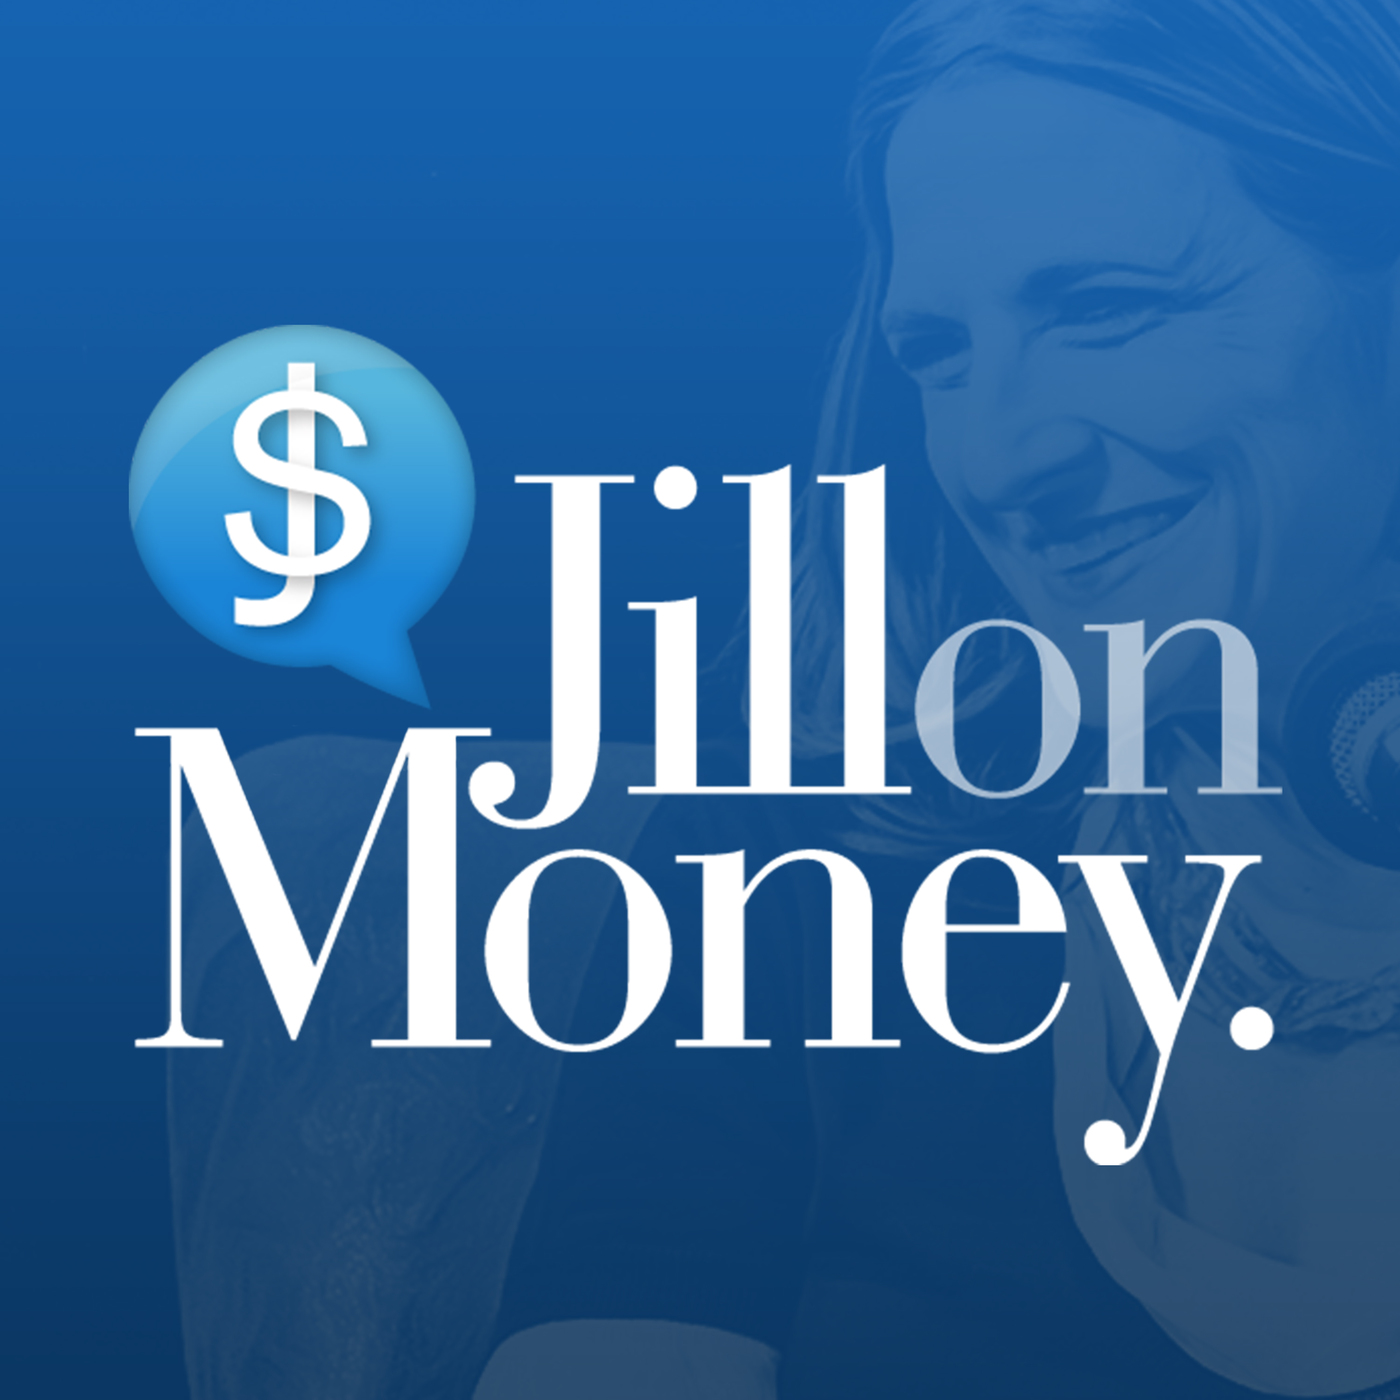 2) Jill on Money